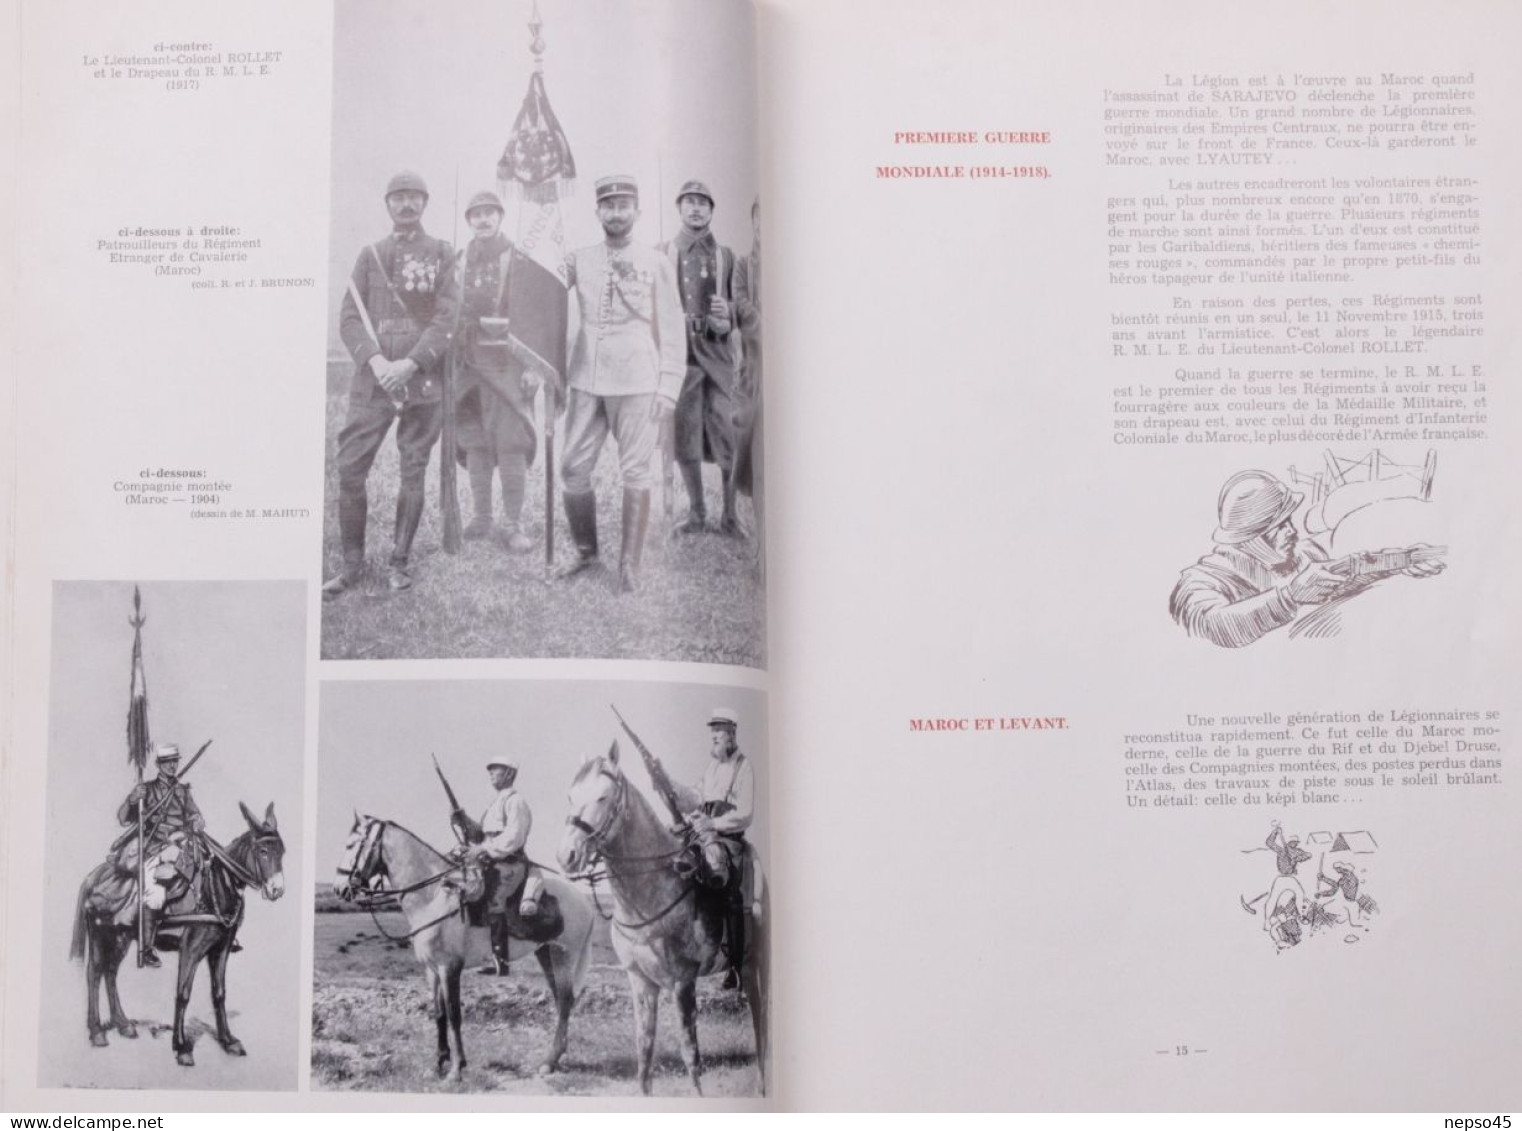 Légion Etrangère.troupe d’assaut.force combattante de l'Armée de terre française